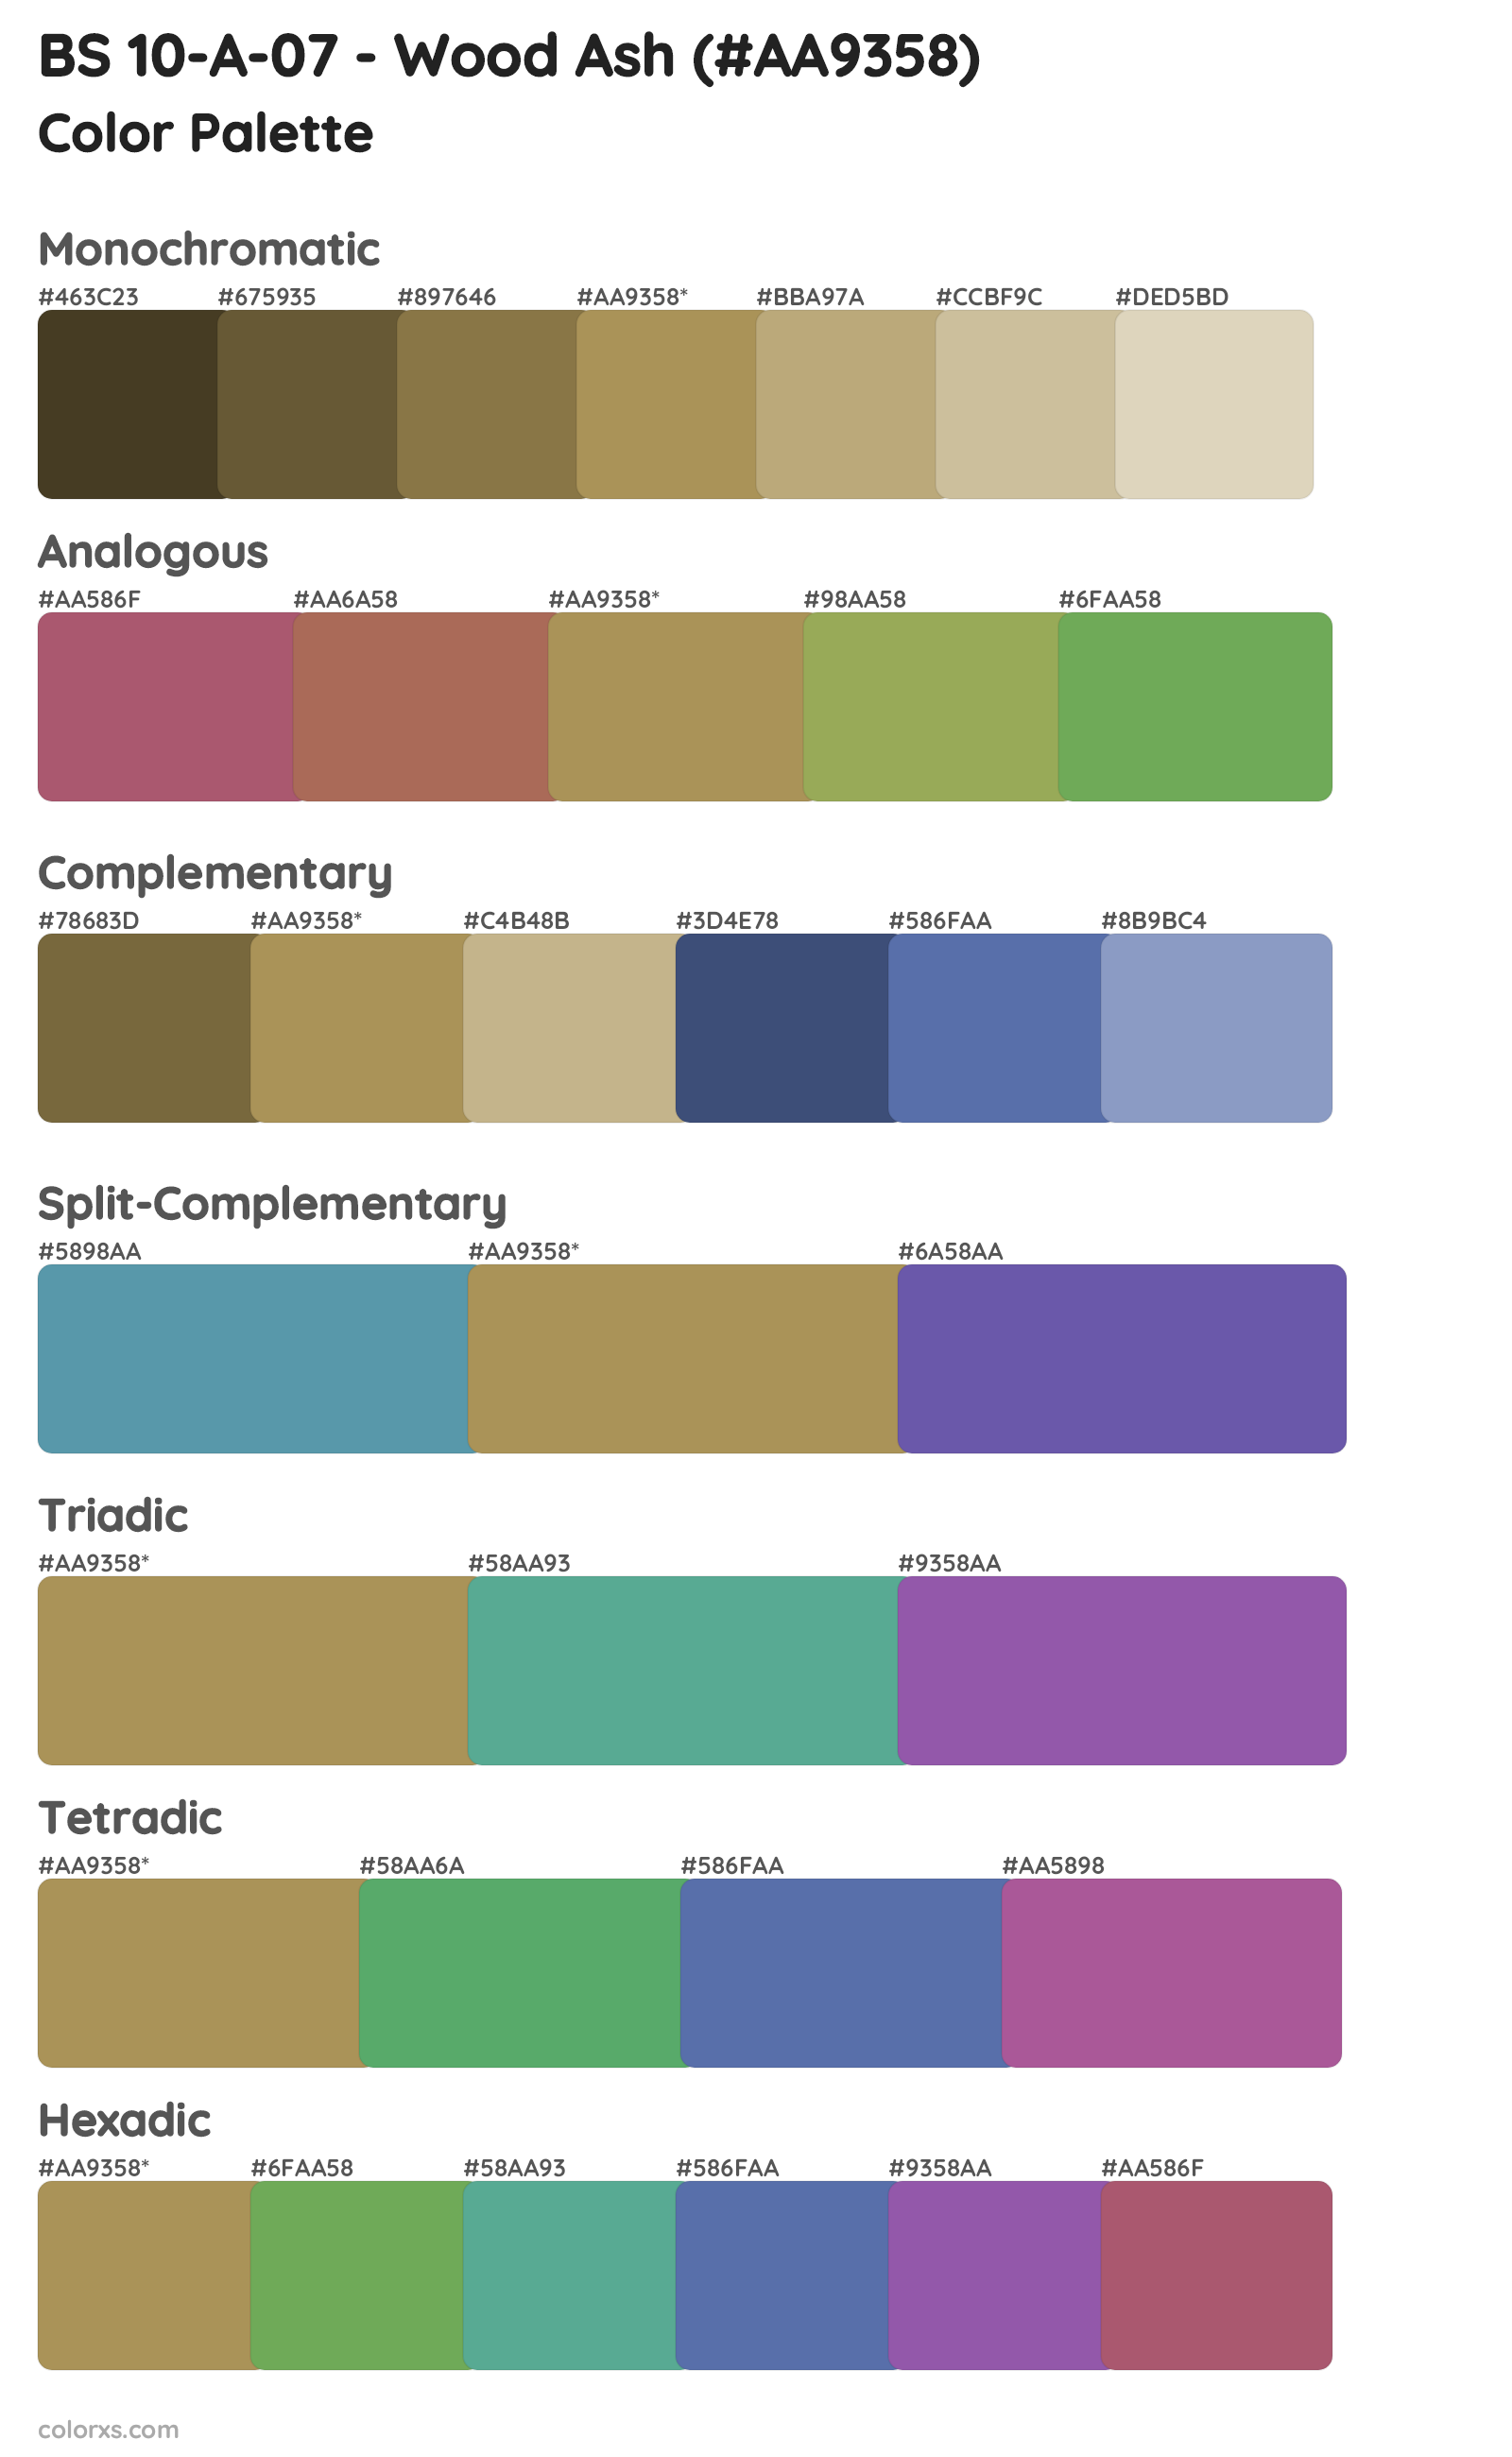 BS 10-A-07 - Wood Ash Color Scheme Palettes